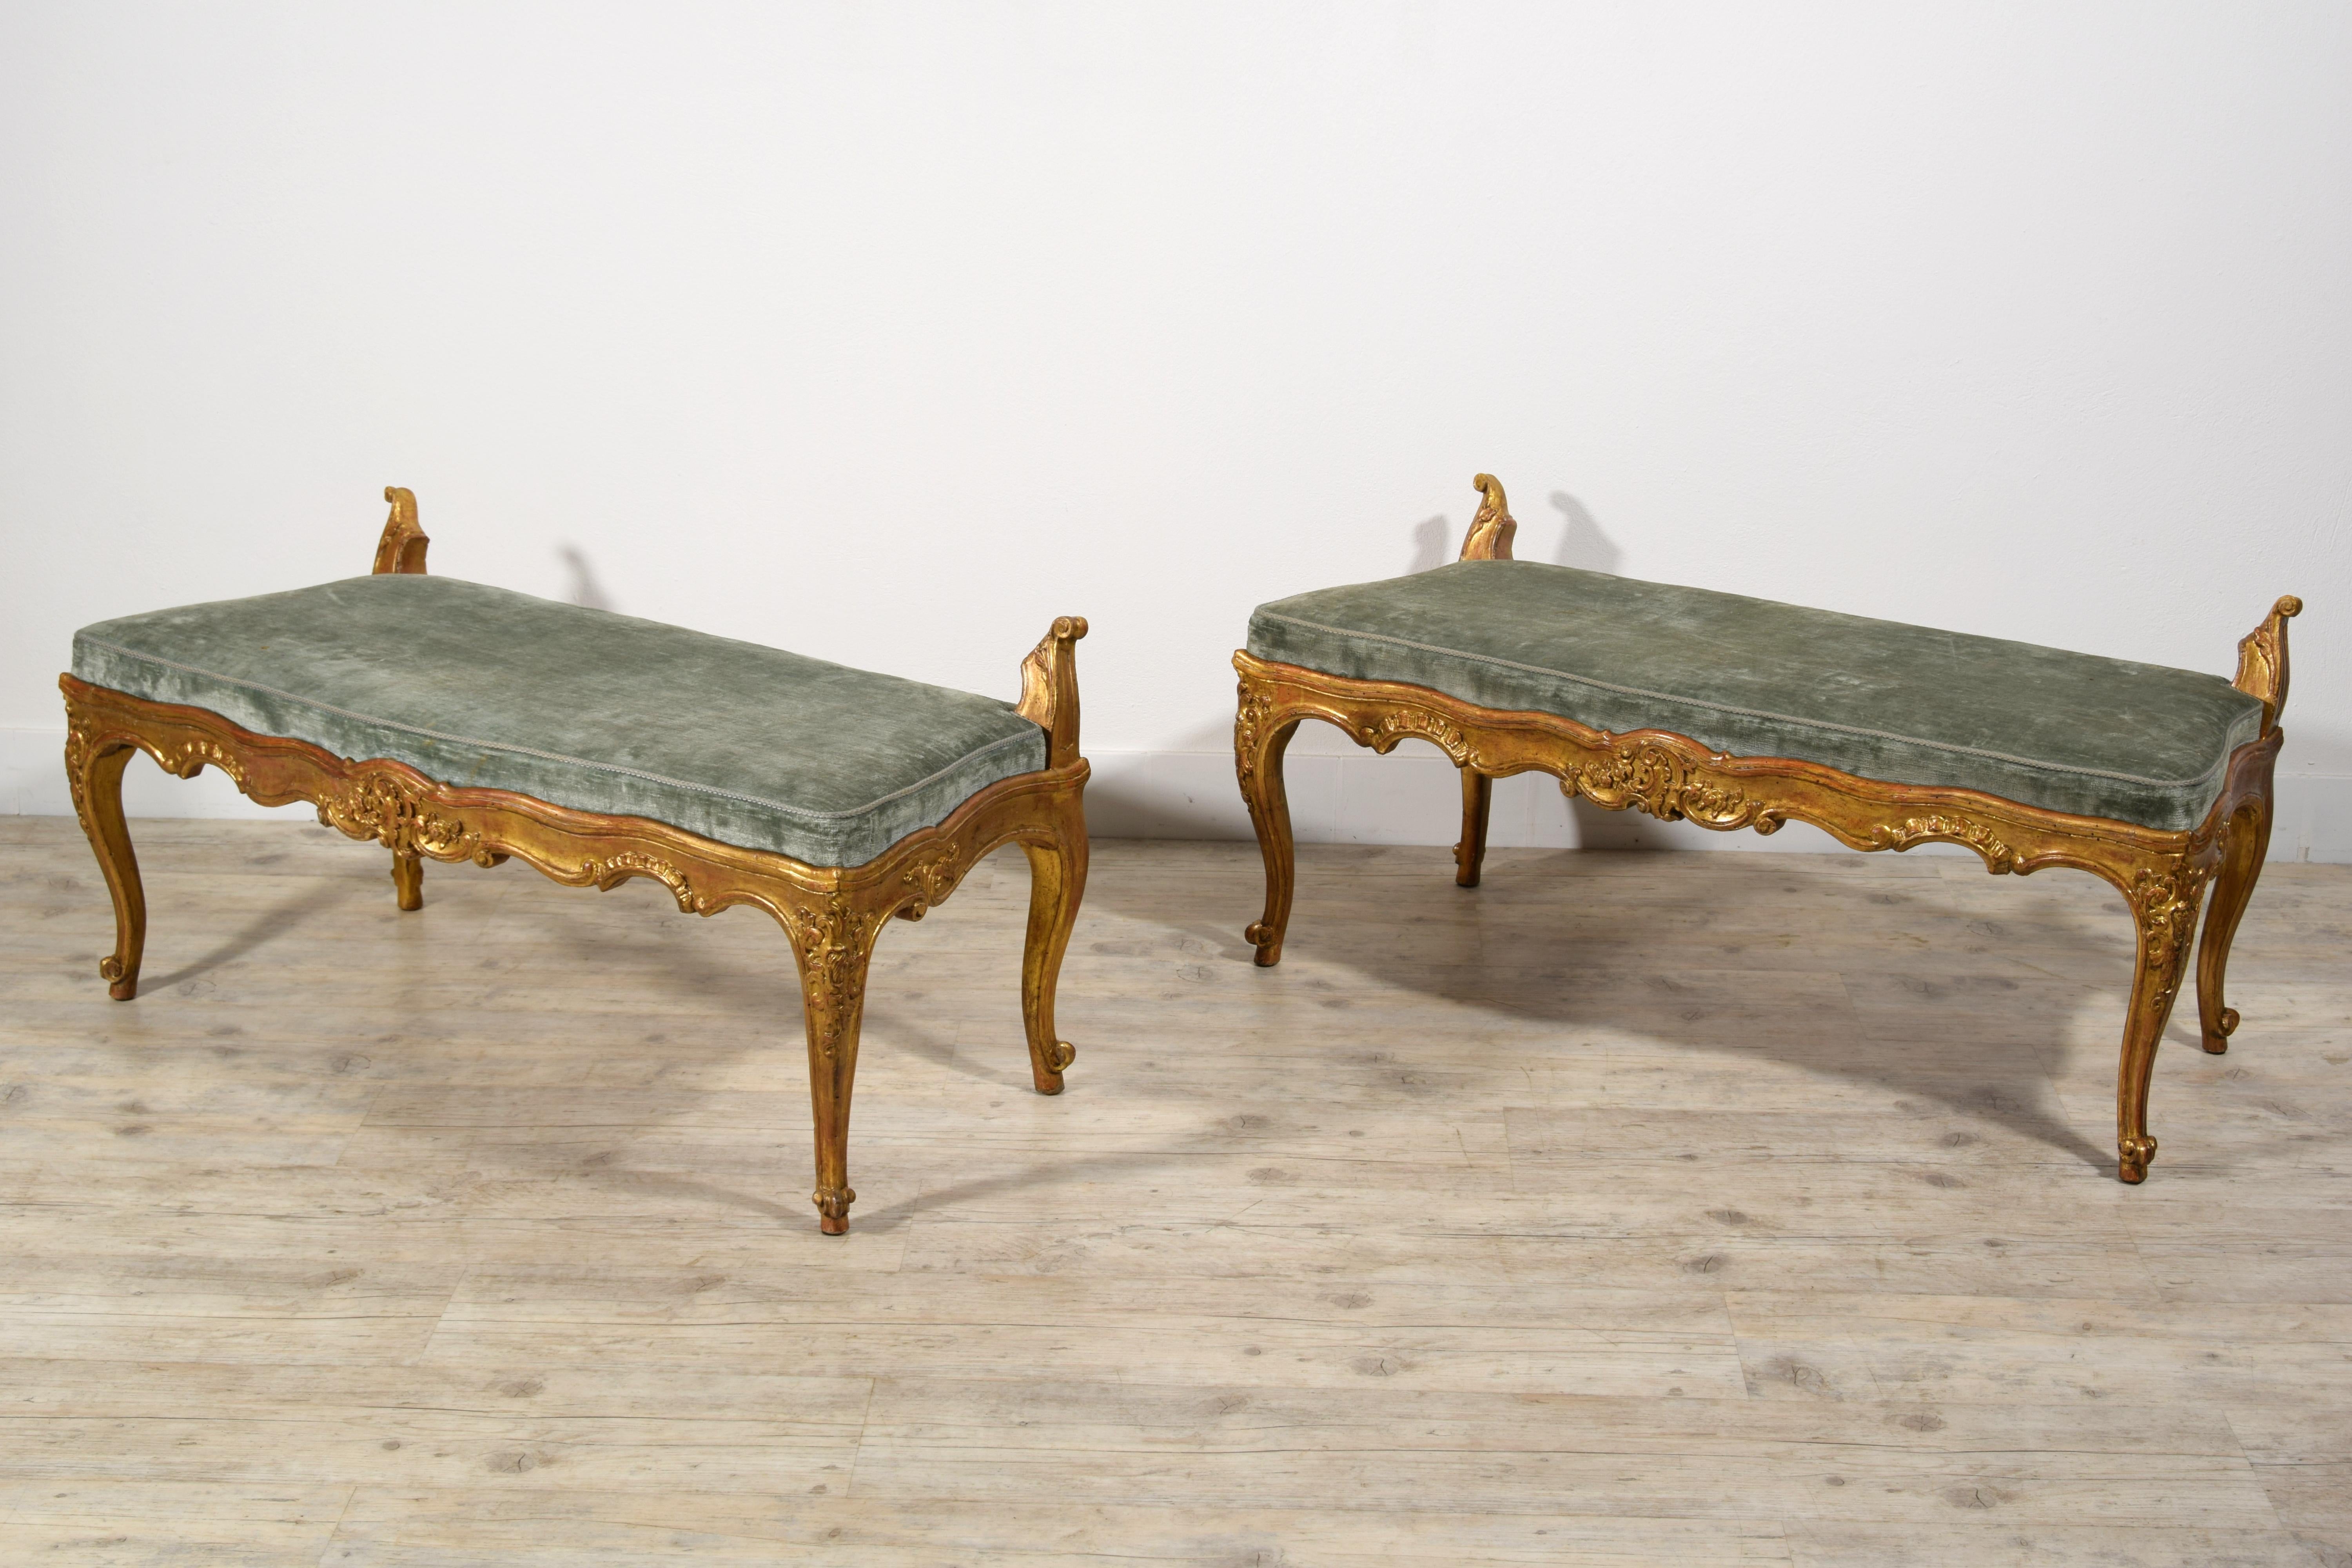 18. Jahrhundert, Paar italienische Rokoko-Bänke aus vergoldetem Holz.

Dieses elegante Paar zweisitziger Bänke wurde in der zweiten Hälfte des 18. Jahrhunderts in Rom, Italien, gebaut. Die Struktur aus reich geschnitztem und vergoldetem Holz weist